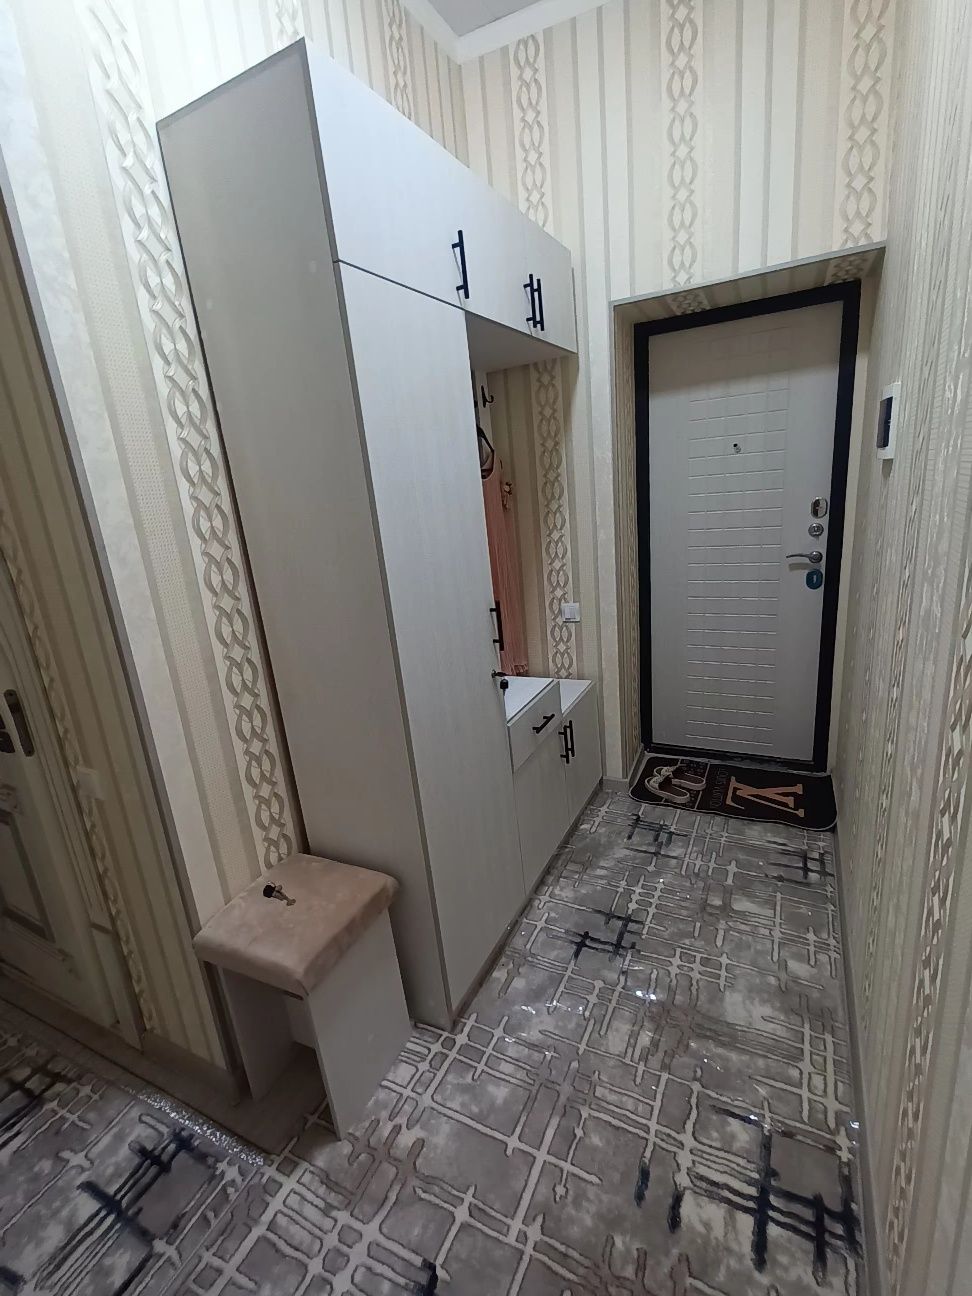 Здается новая квартира в городе бухарес новым ремонтом 1 комн.